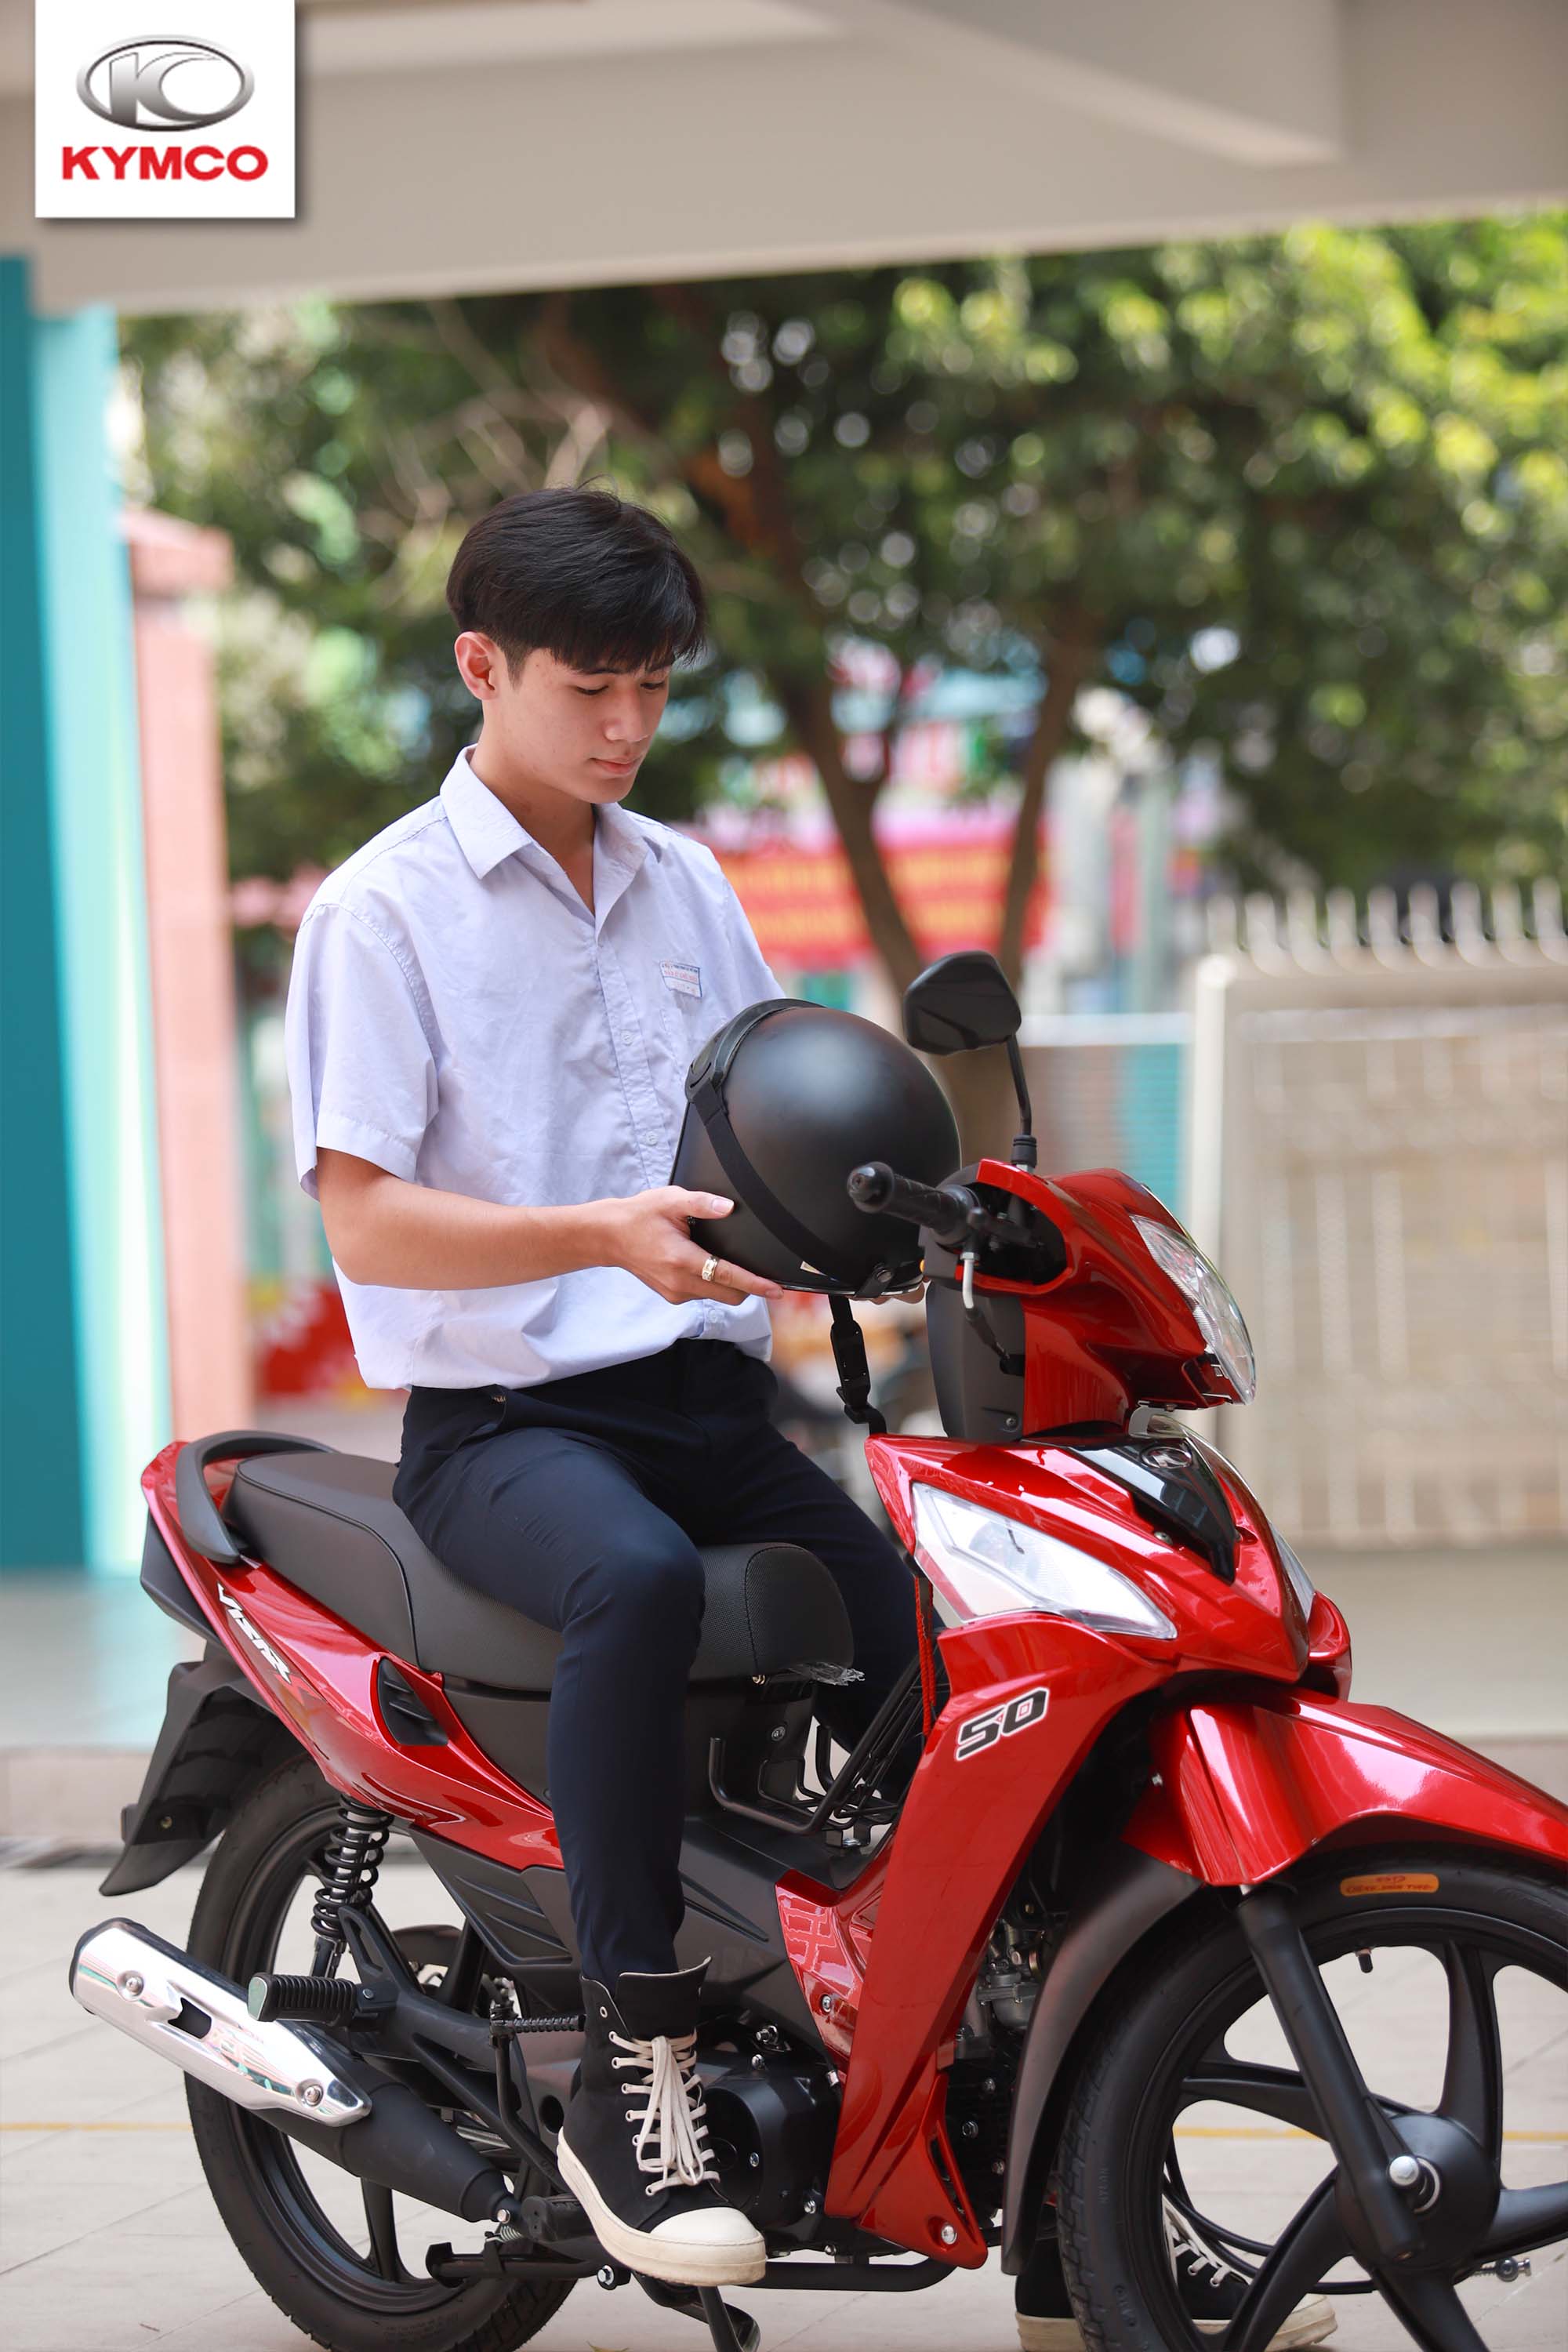 Xe máy 50cc thích hợp cho các bạn học sinh, sinh viên nên sử dụng đi học,  đi làm